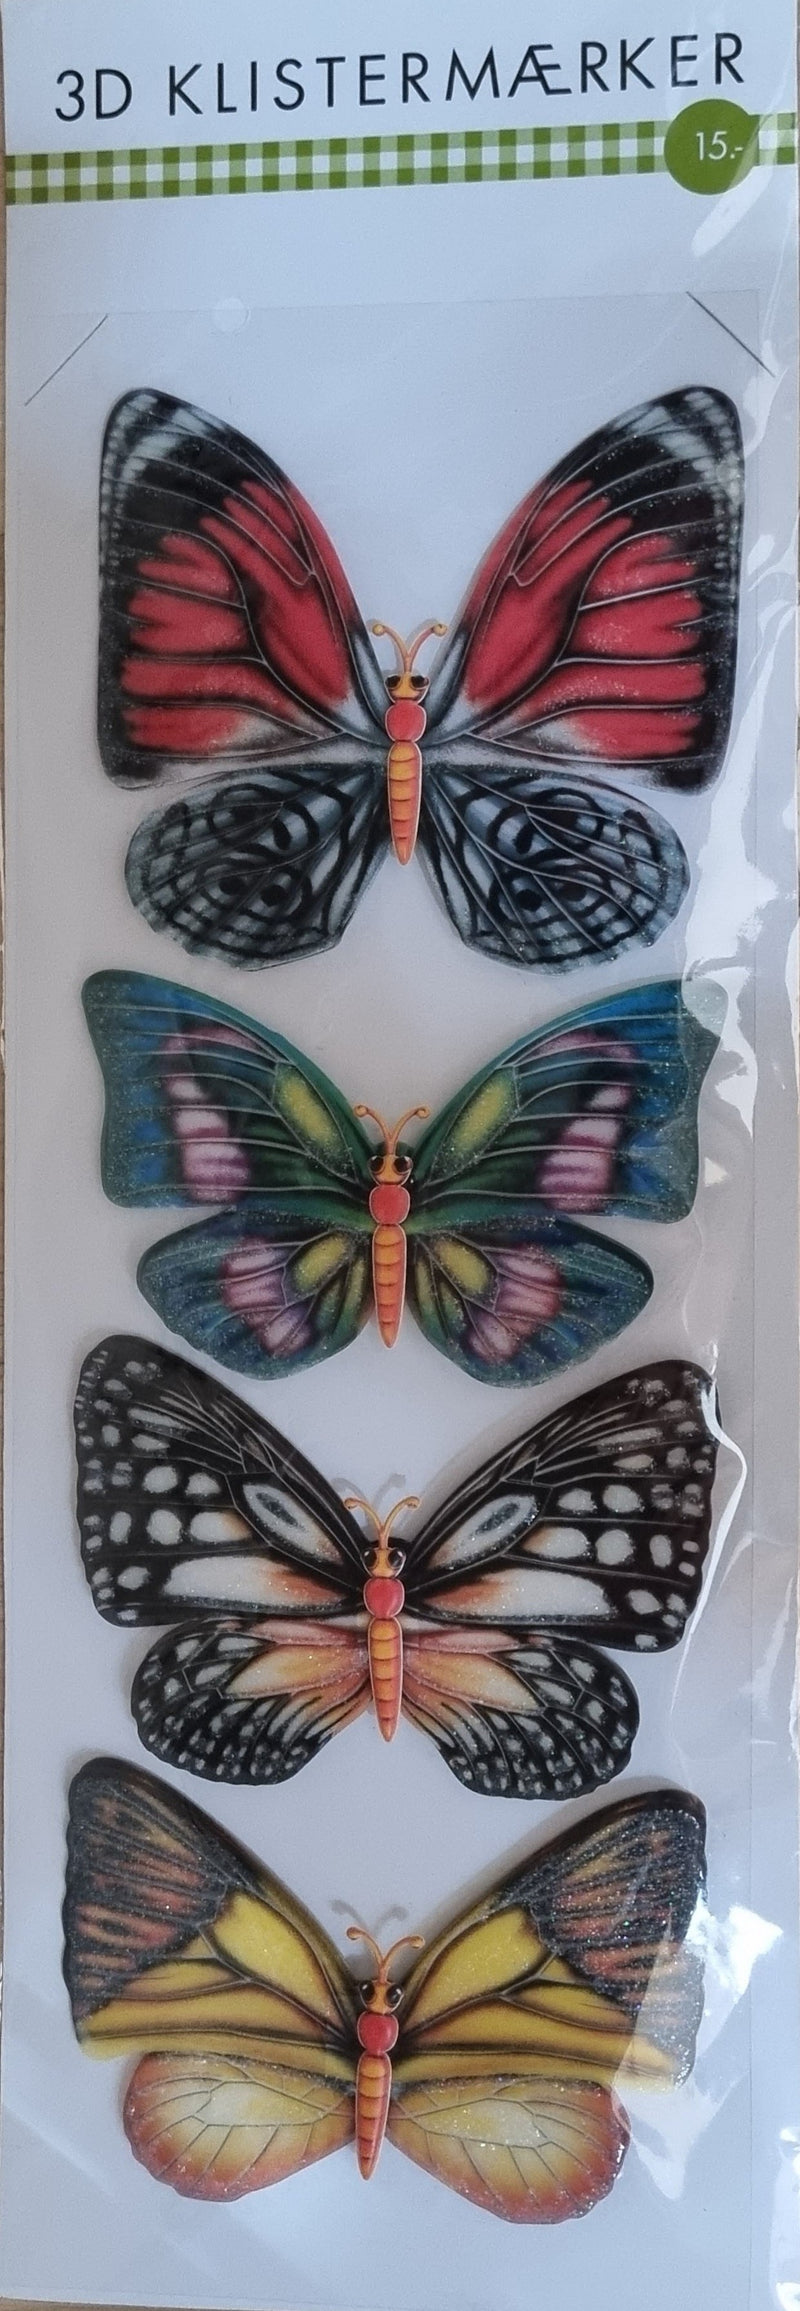 3D klistermærker sommerfugl